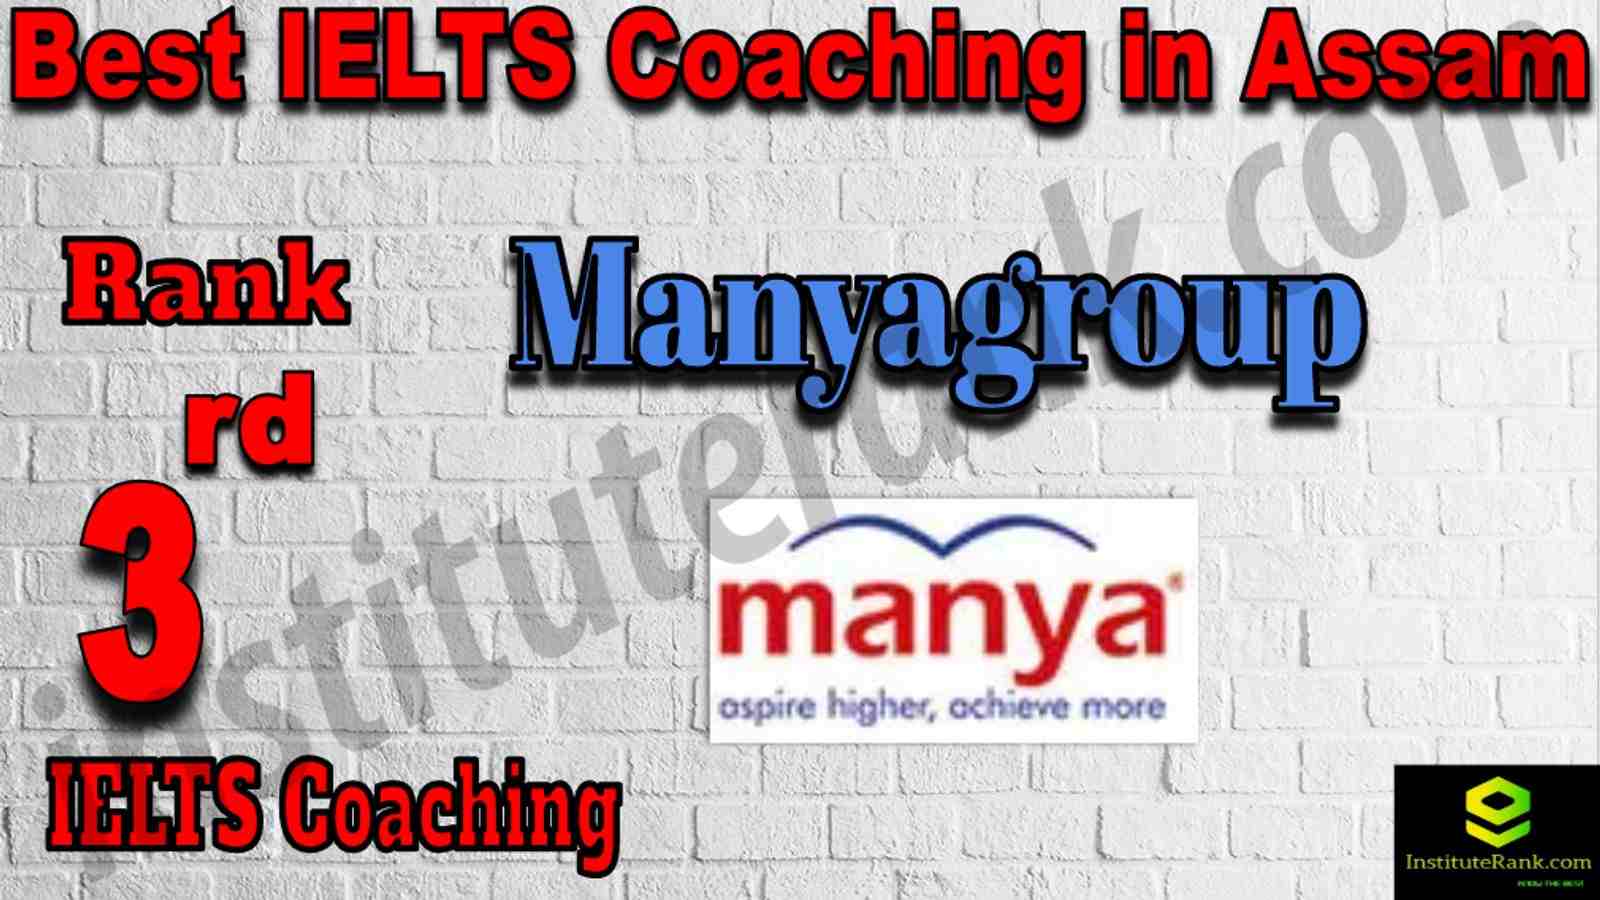 3rd Best IELTS Coaching in Assam